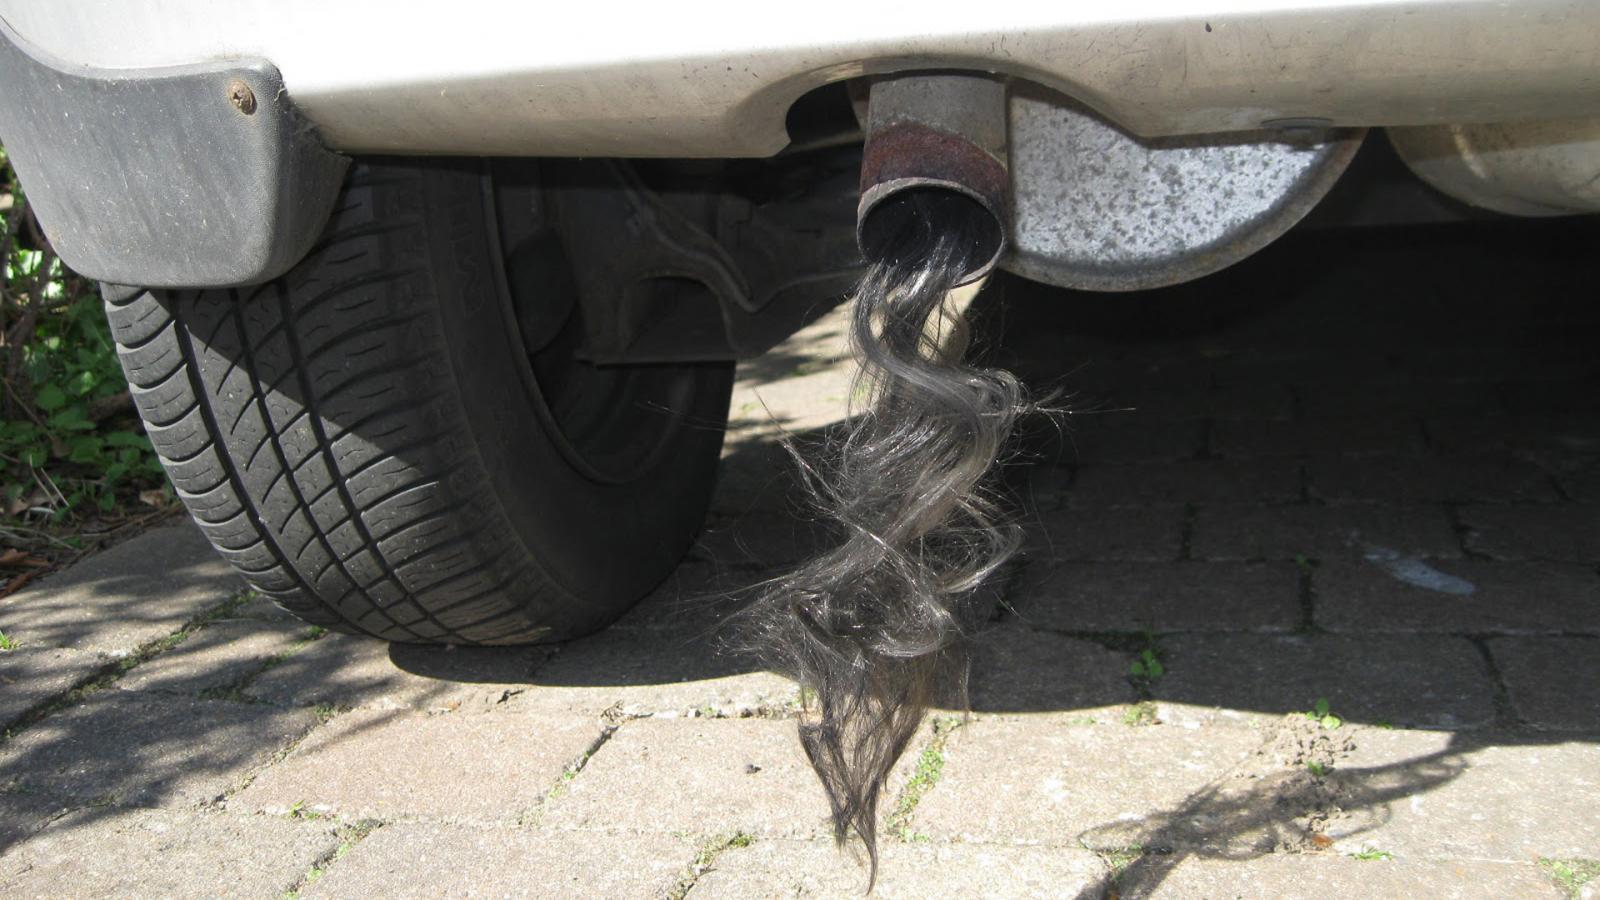 Σπάνιο φαινόμενο που προκαλεί πανικό -Όταν η εξάτμιση του αυτοκινήτου βγάζει... μαλλιά